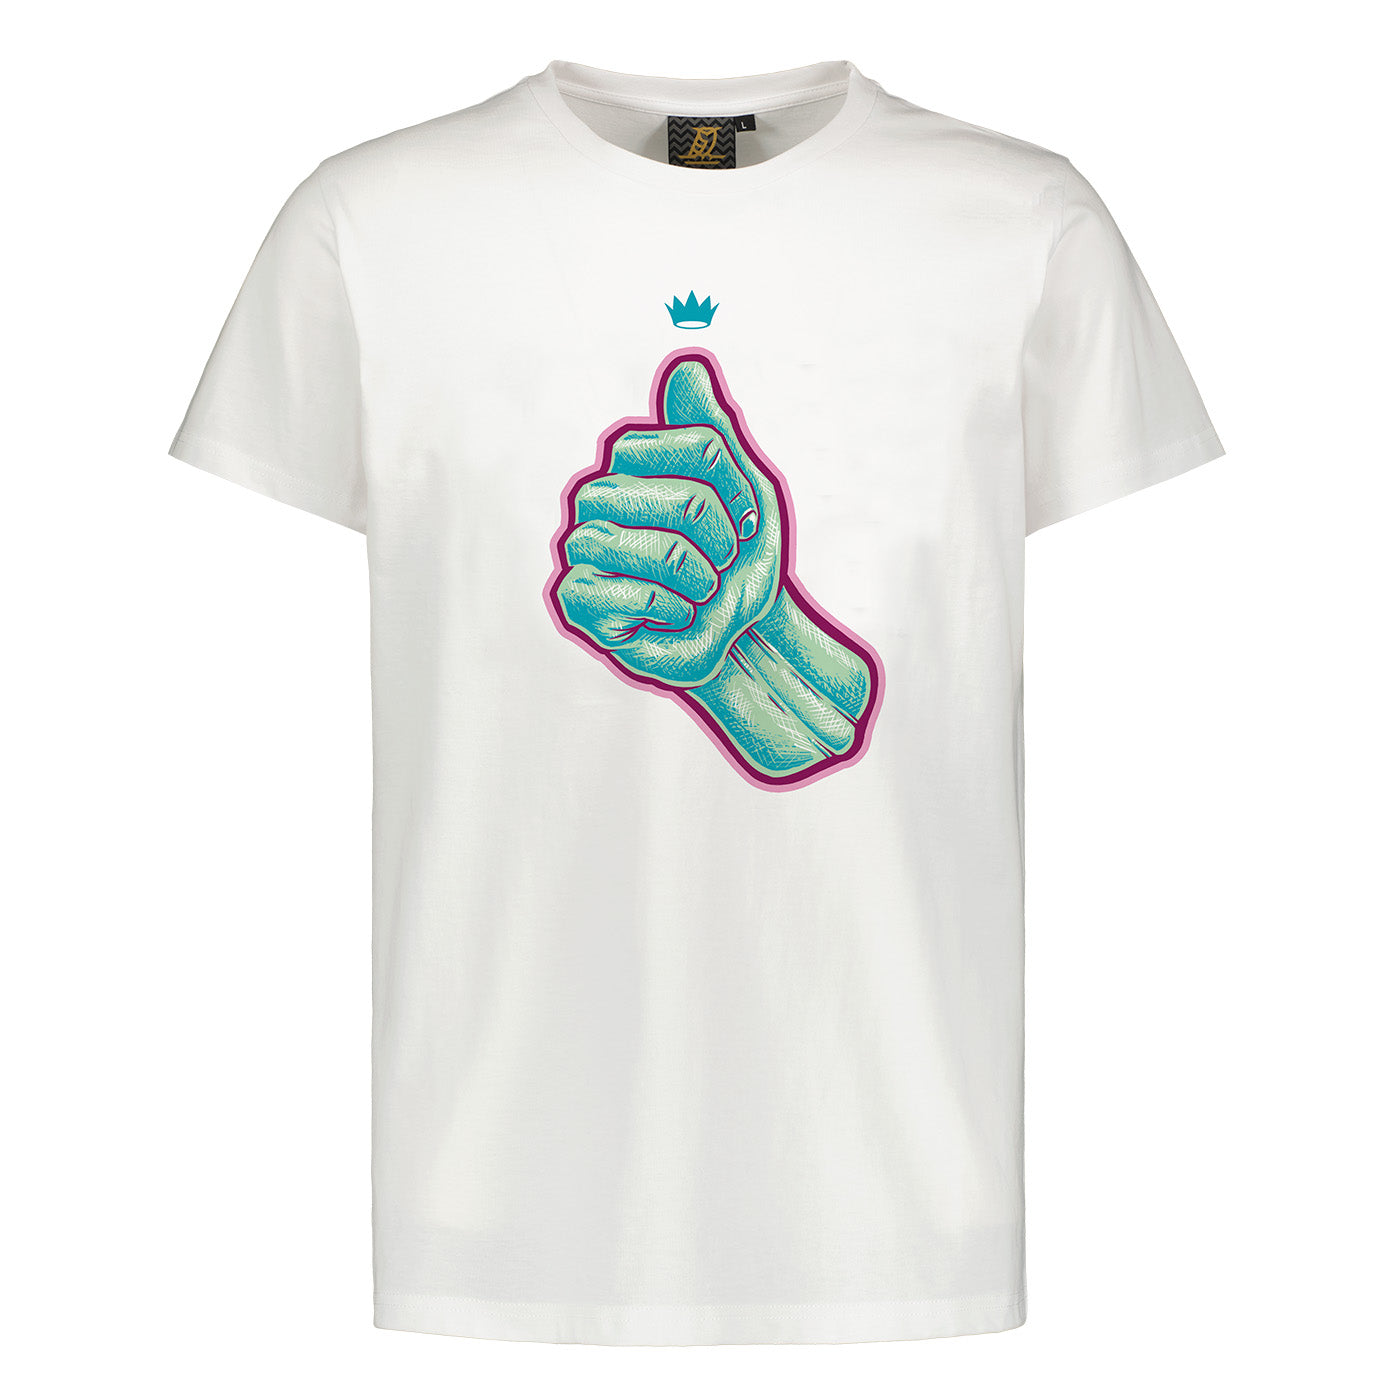 Thumb of Jari Graphic Logo T-shirt, White